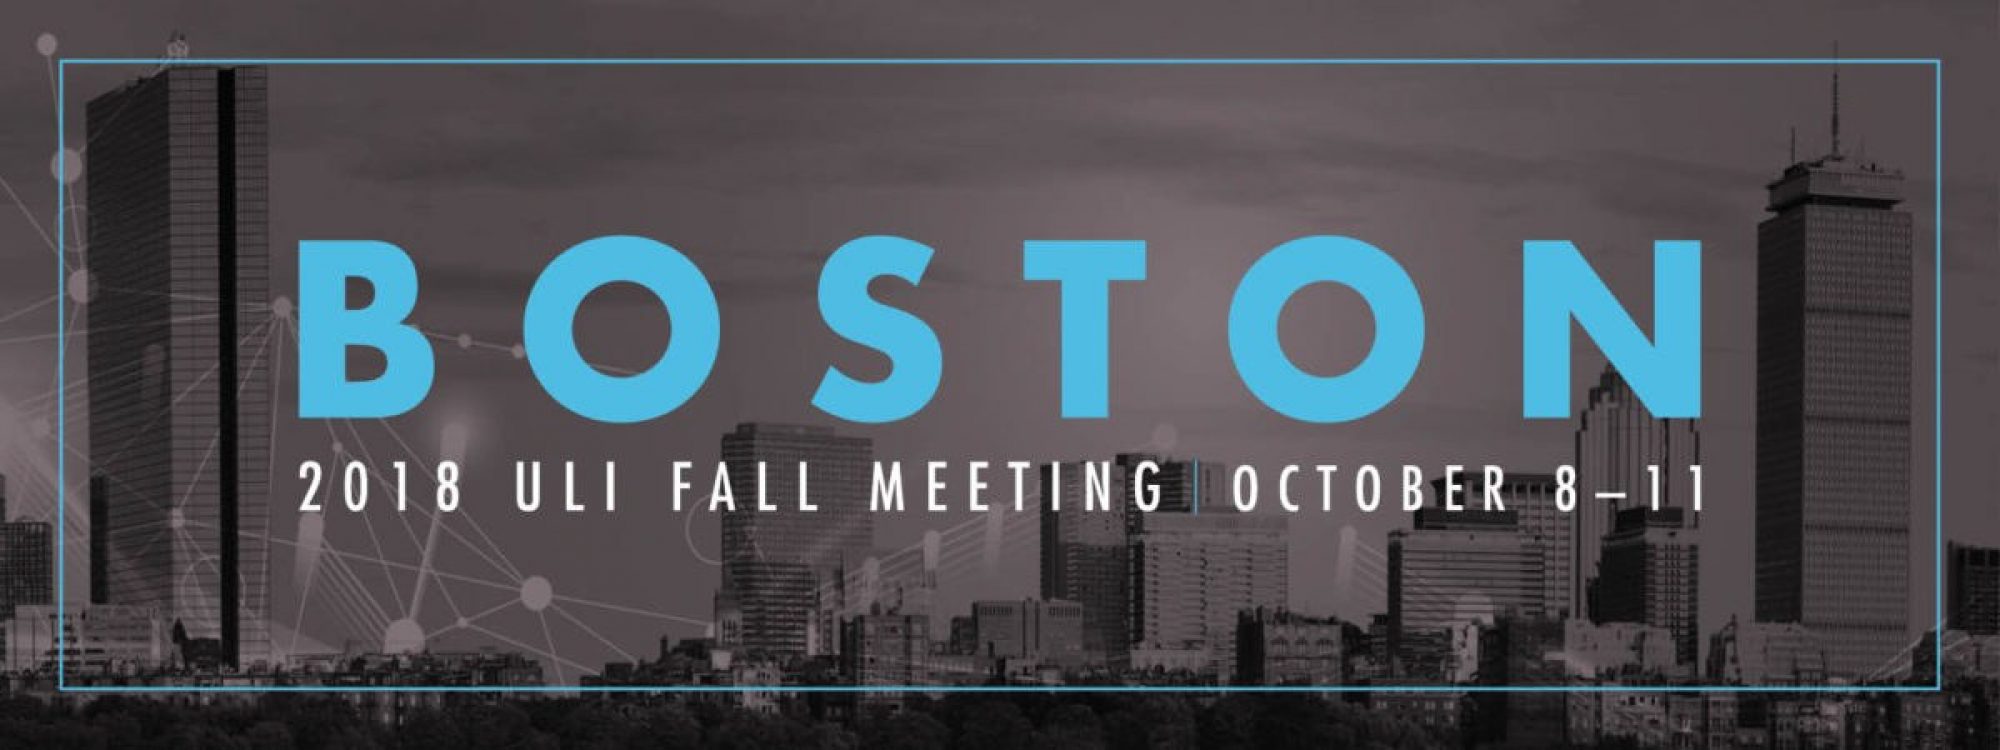 ULI Fall Meeting in Boston, USA News